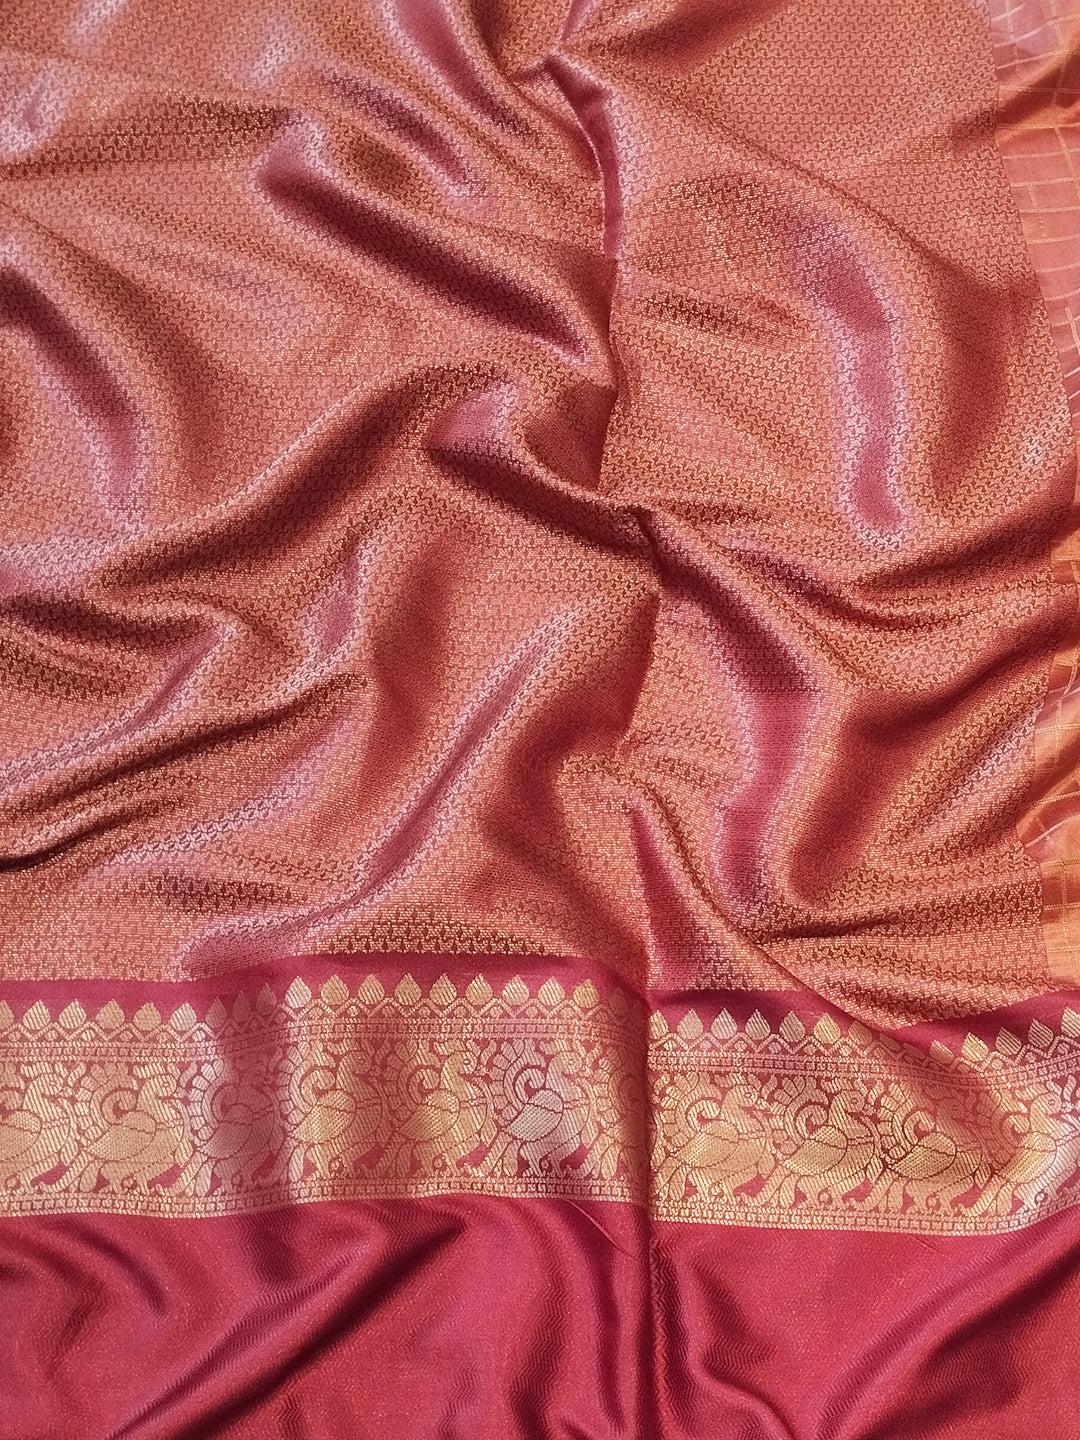 Maroon Colour Double Border Chex Weaving Banarasi Soft Silk Saree